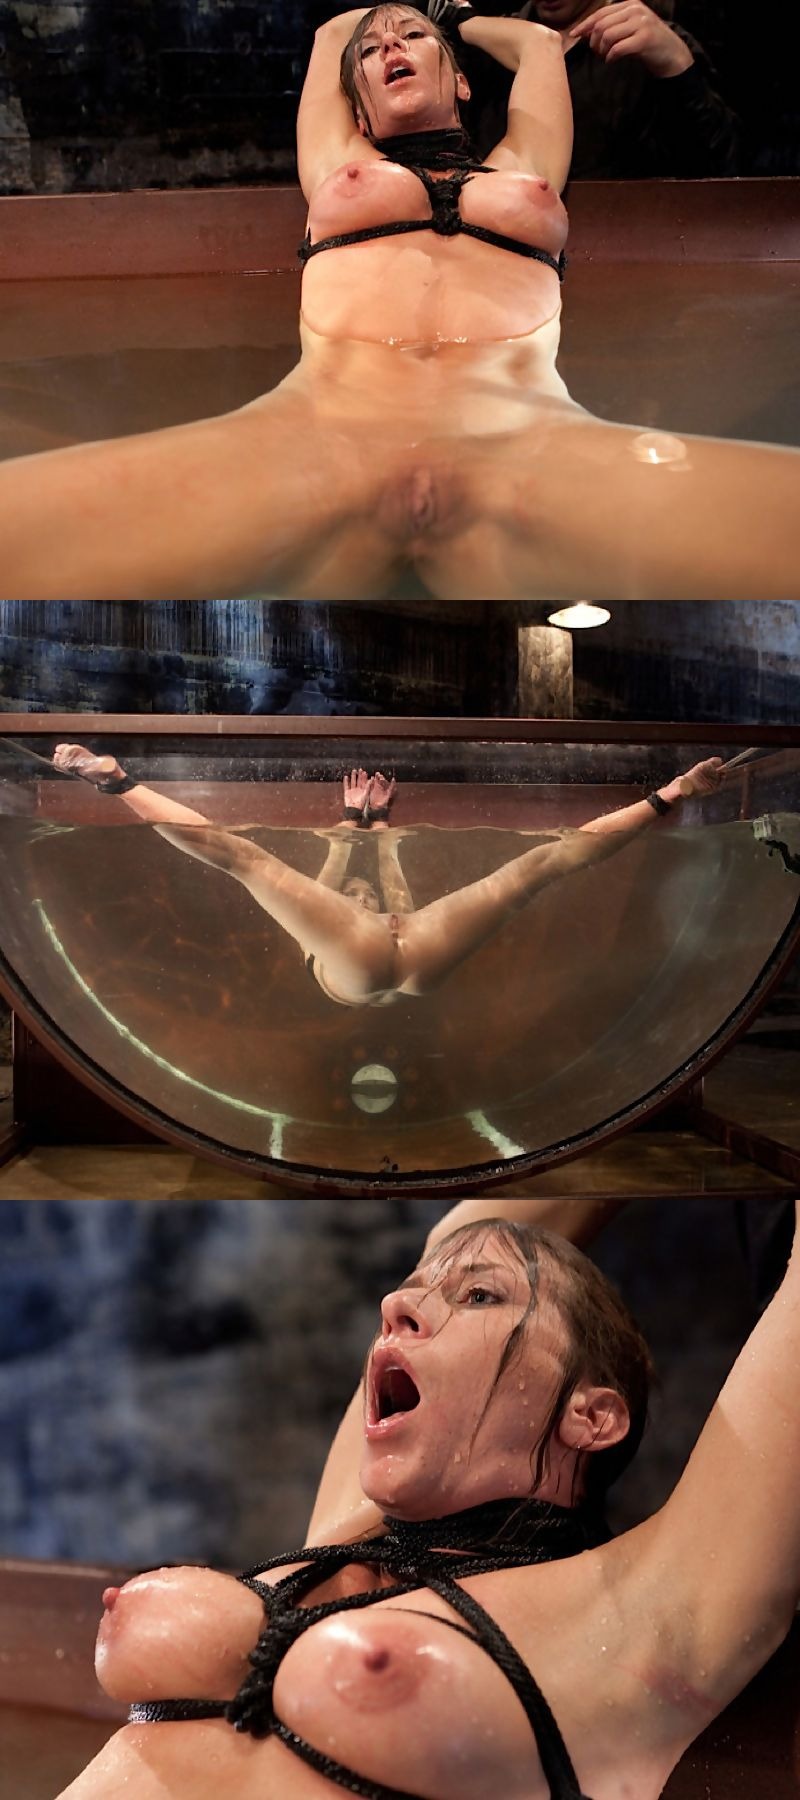 Water Torture Porn - Water Torture (72 photos) - Ð¿Ð¾Ñ€Ð½Ð¾